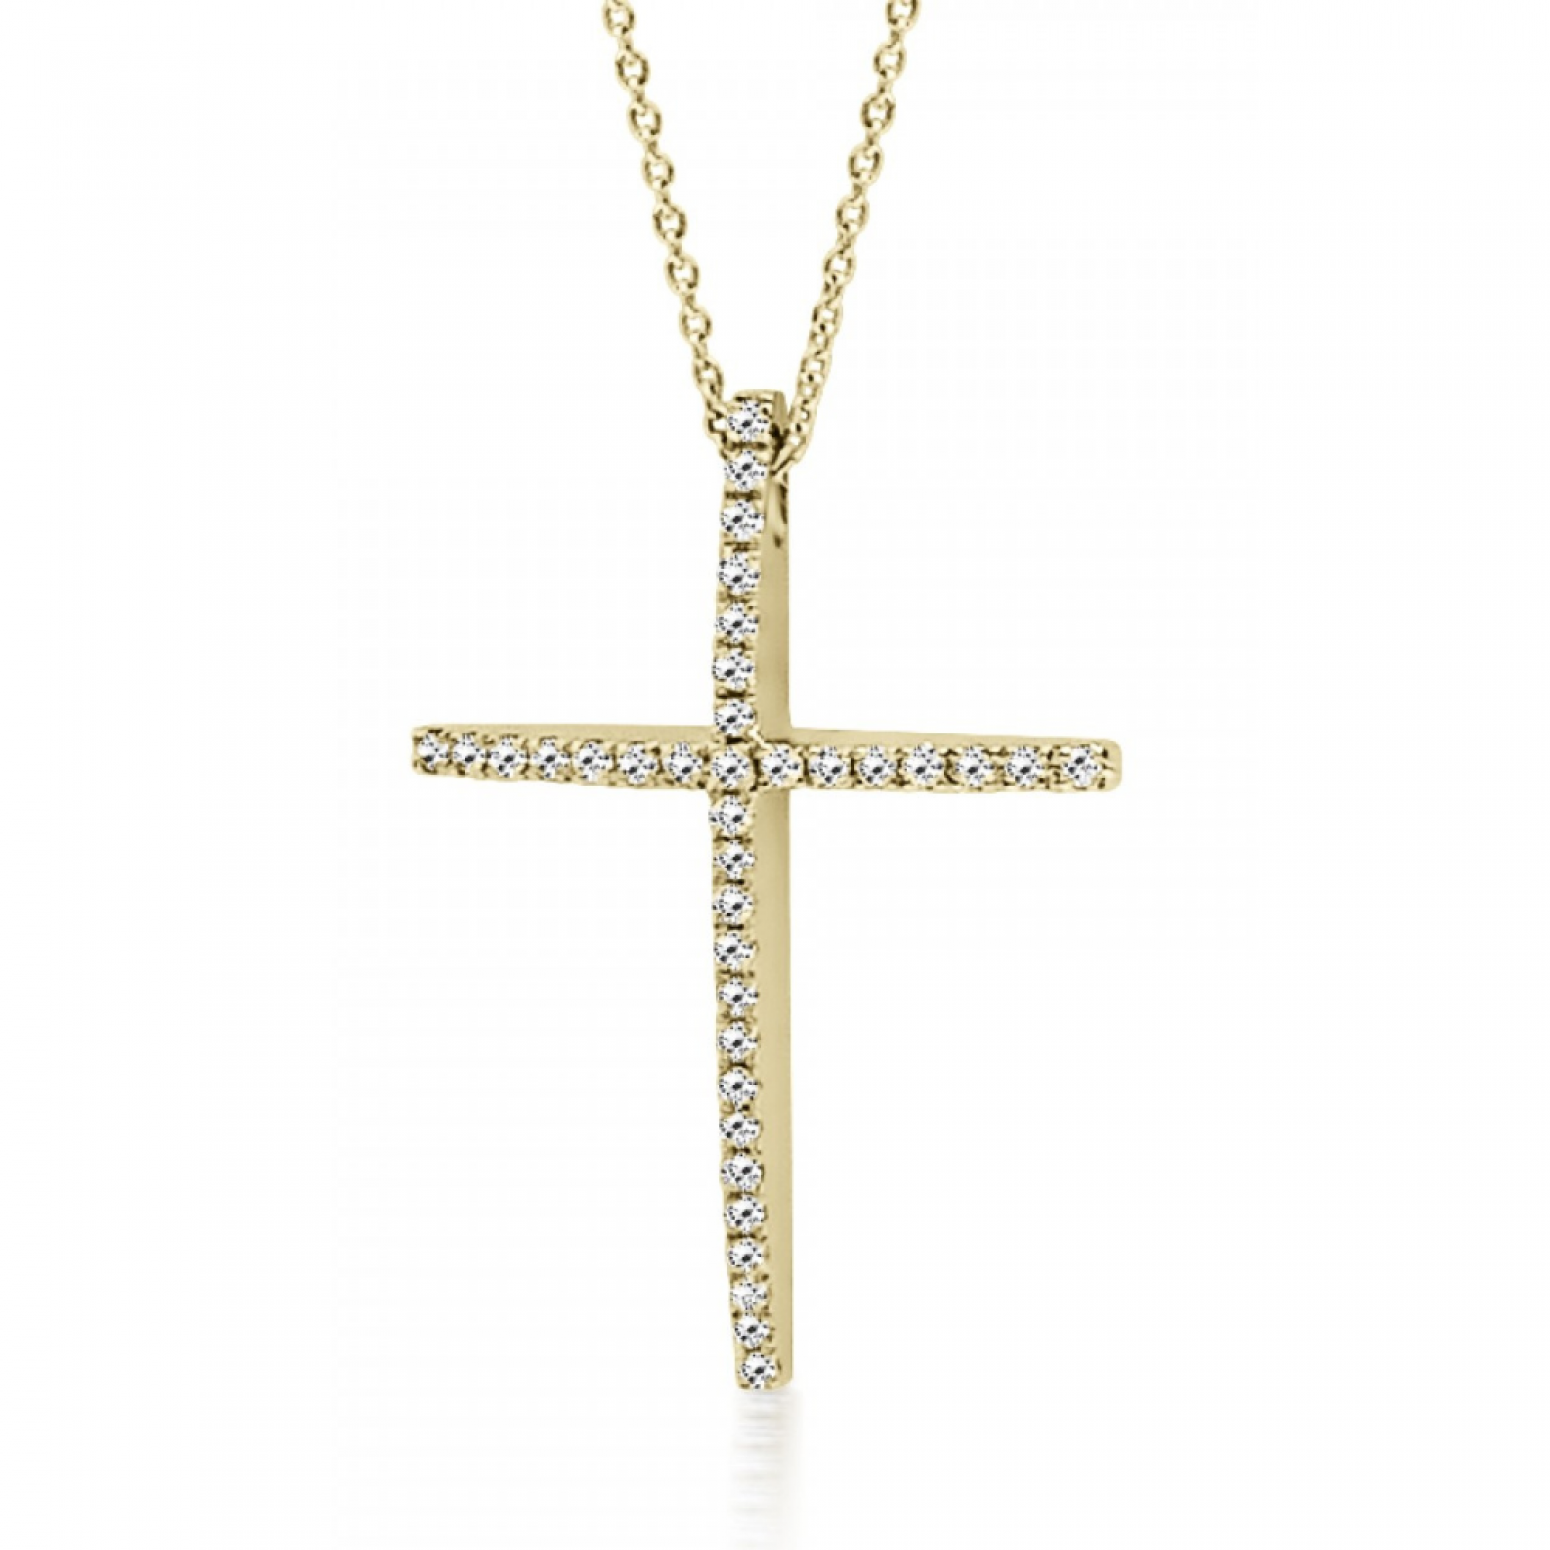 Βαπτιστικός σταυρός με αλυσίδα Κ18 χρυσό με διαμάντια 0.16ct, VS2, H ko5169 ΣΤΑΥΡΟΙ Κοσμηματα - chrilia.gr